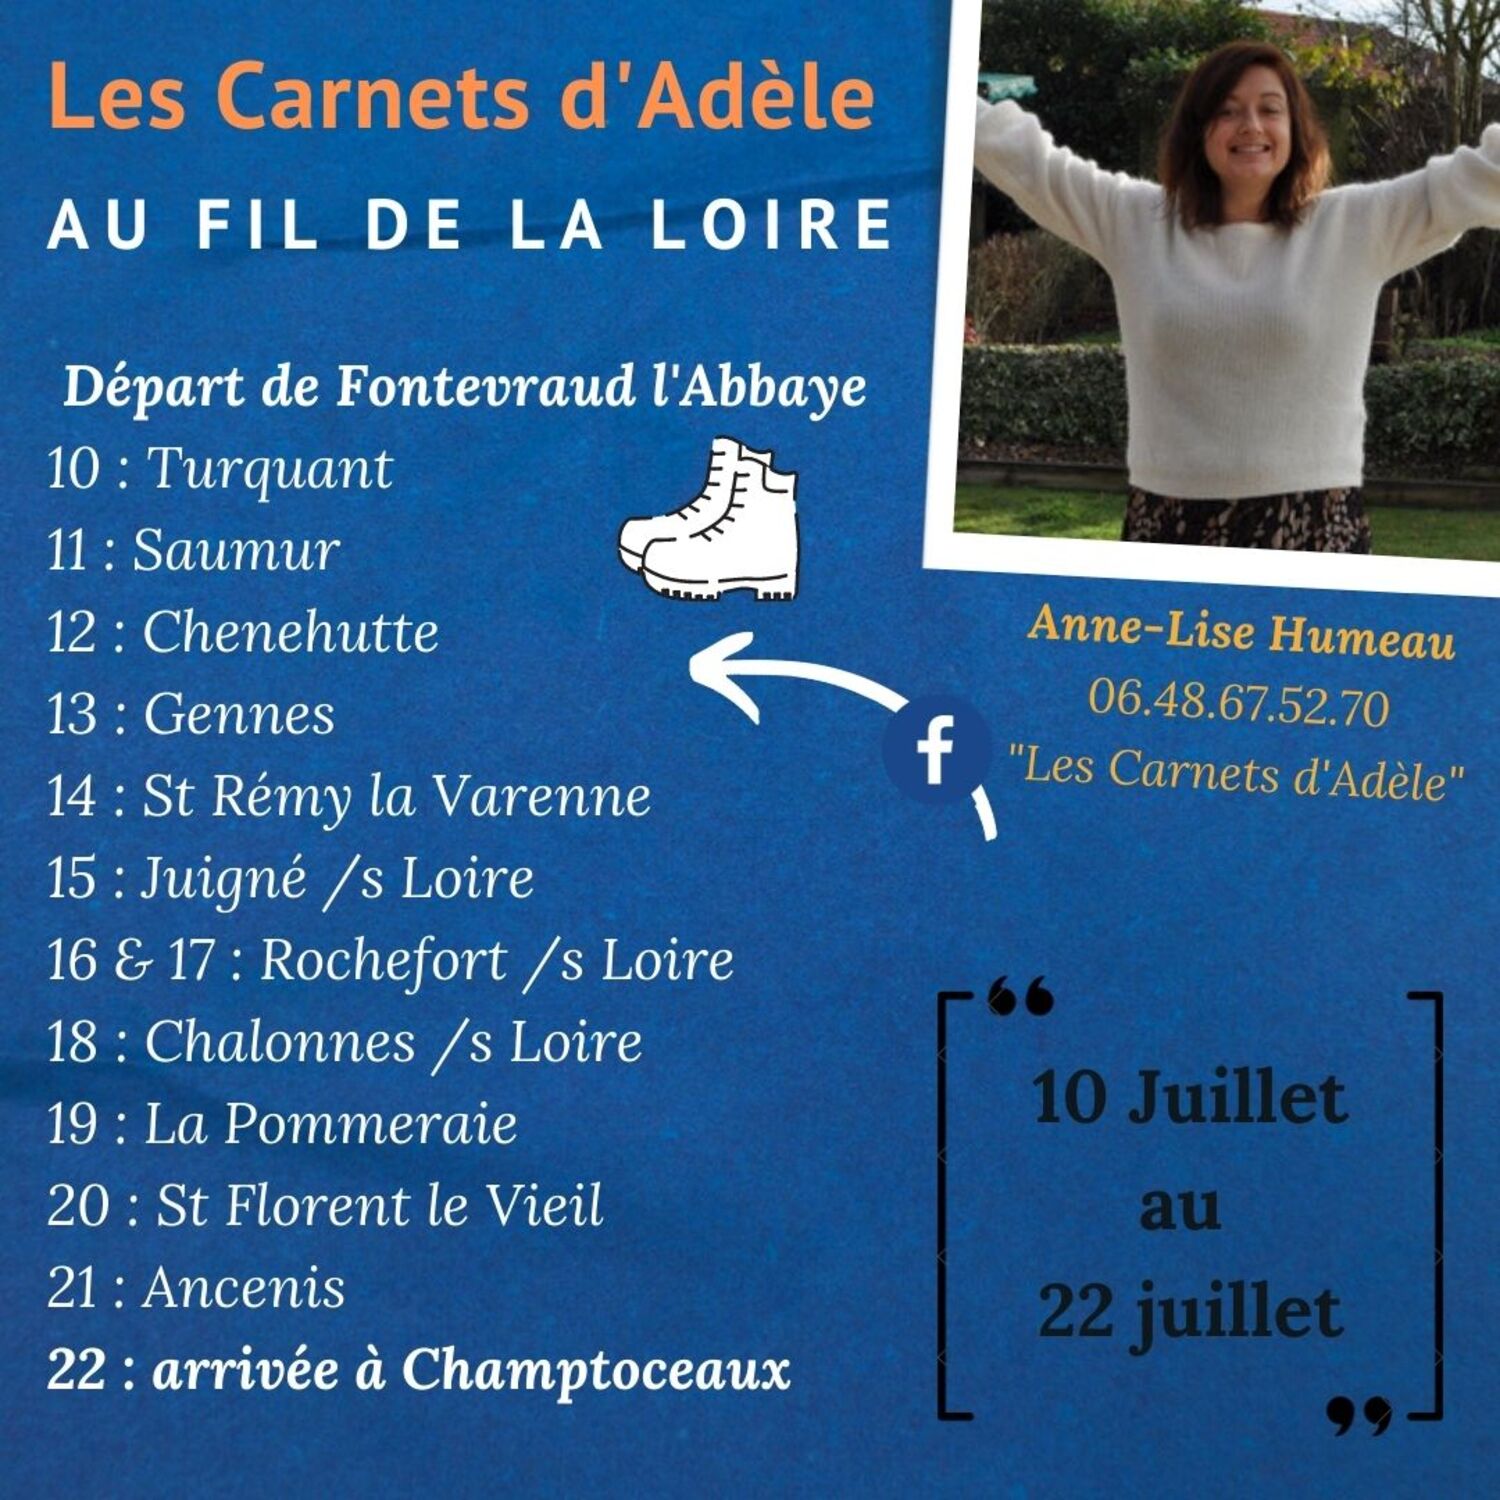 Les Carnets d'Adèle une balade gourmande au fil de la Loire